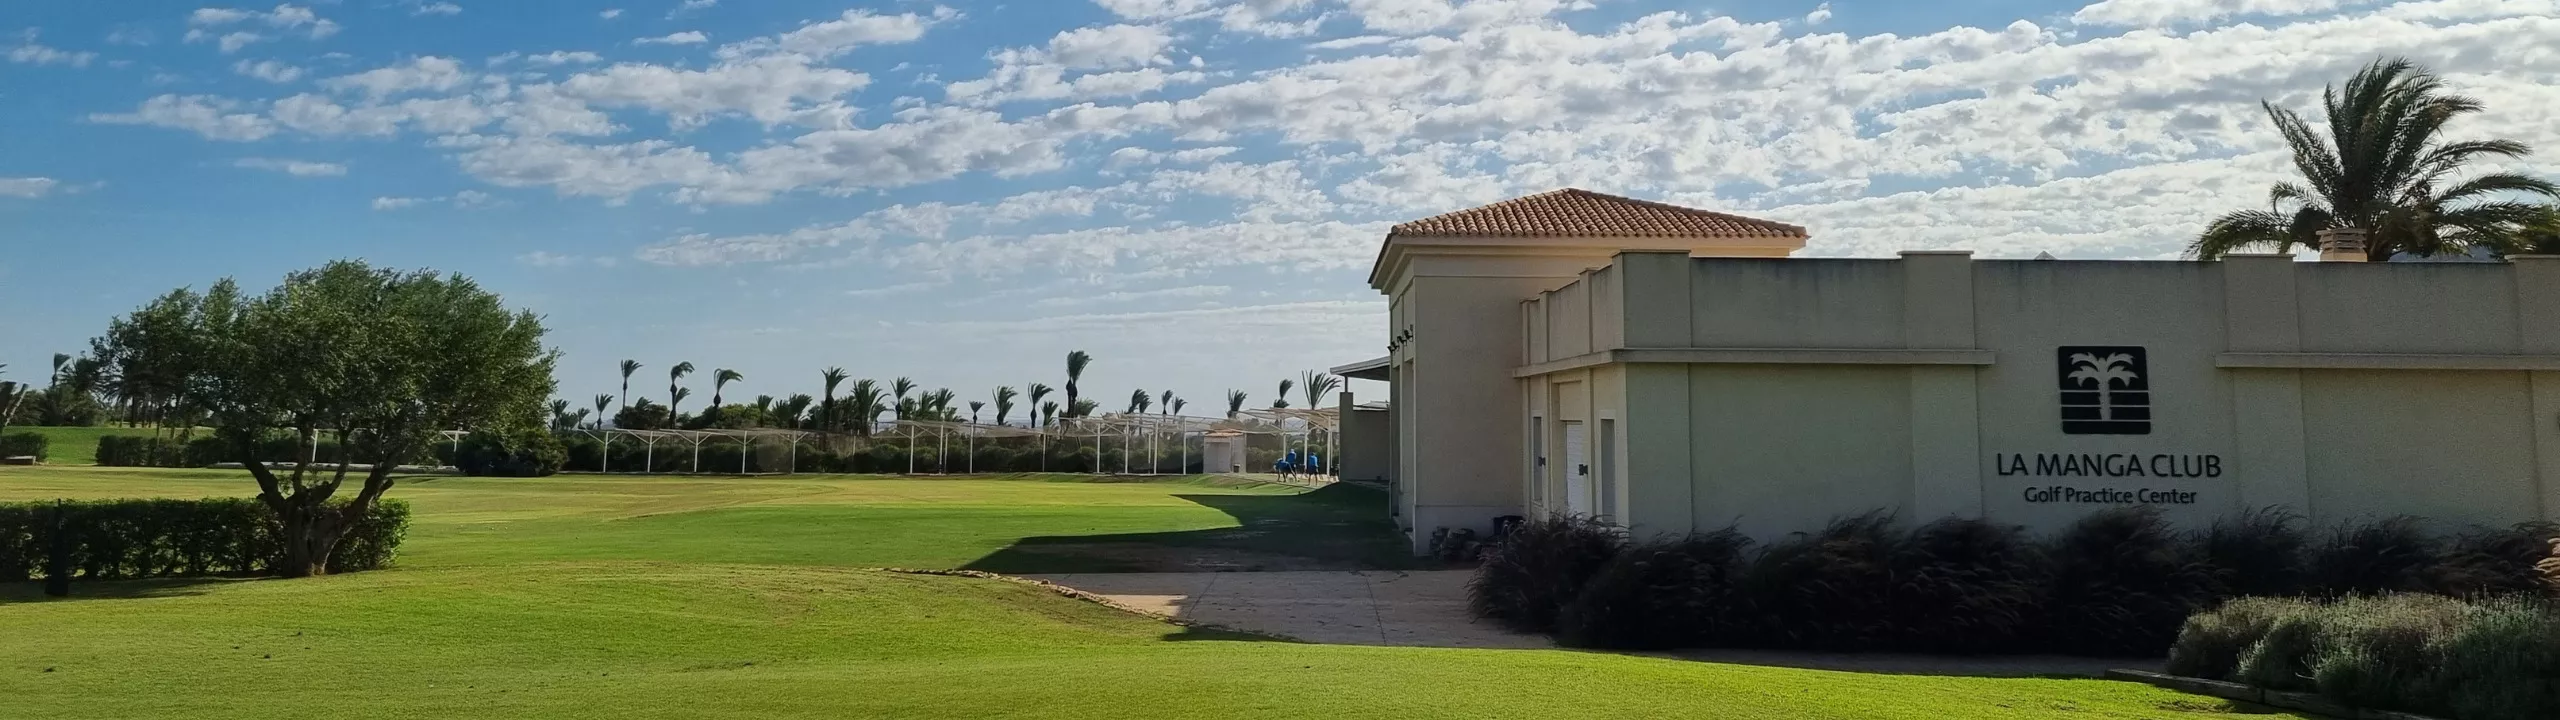 La Manga Club - golf - academia de golf y prácticas